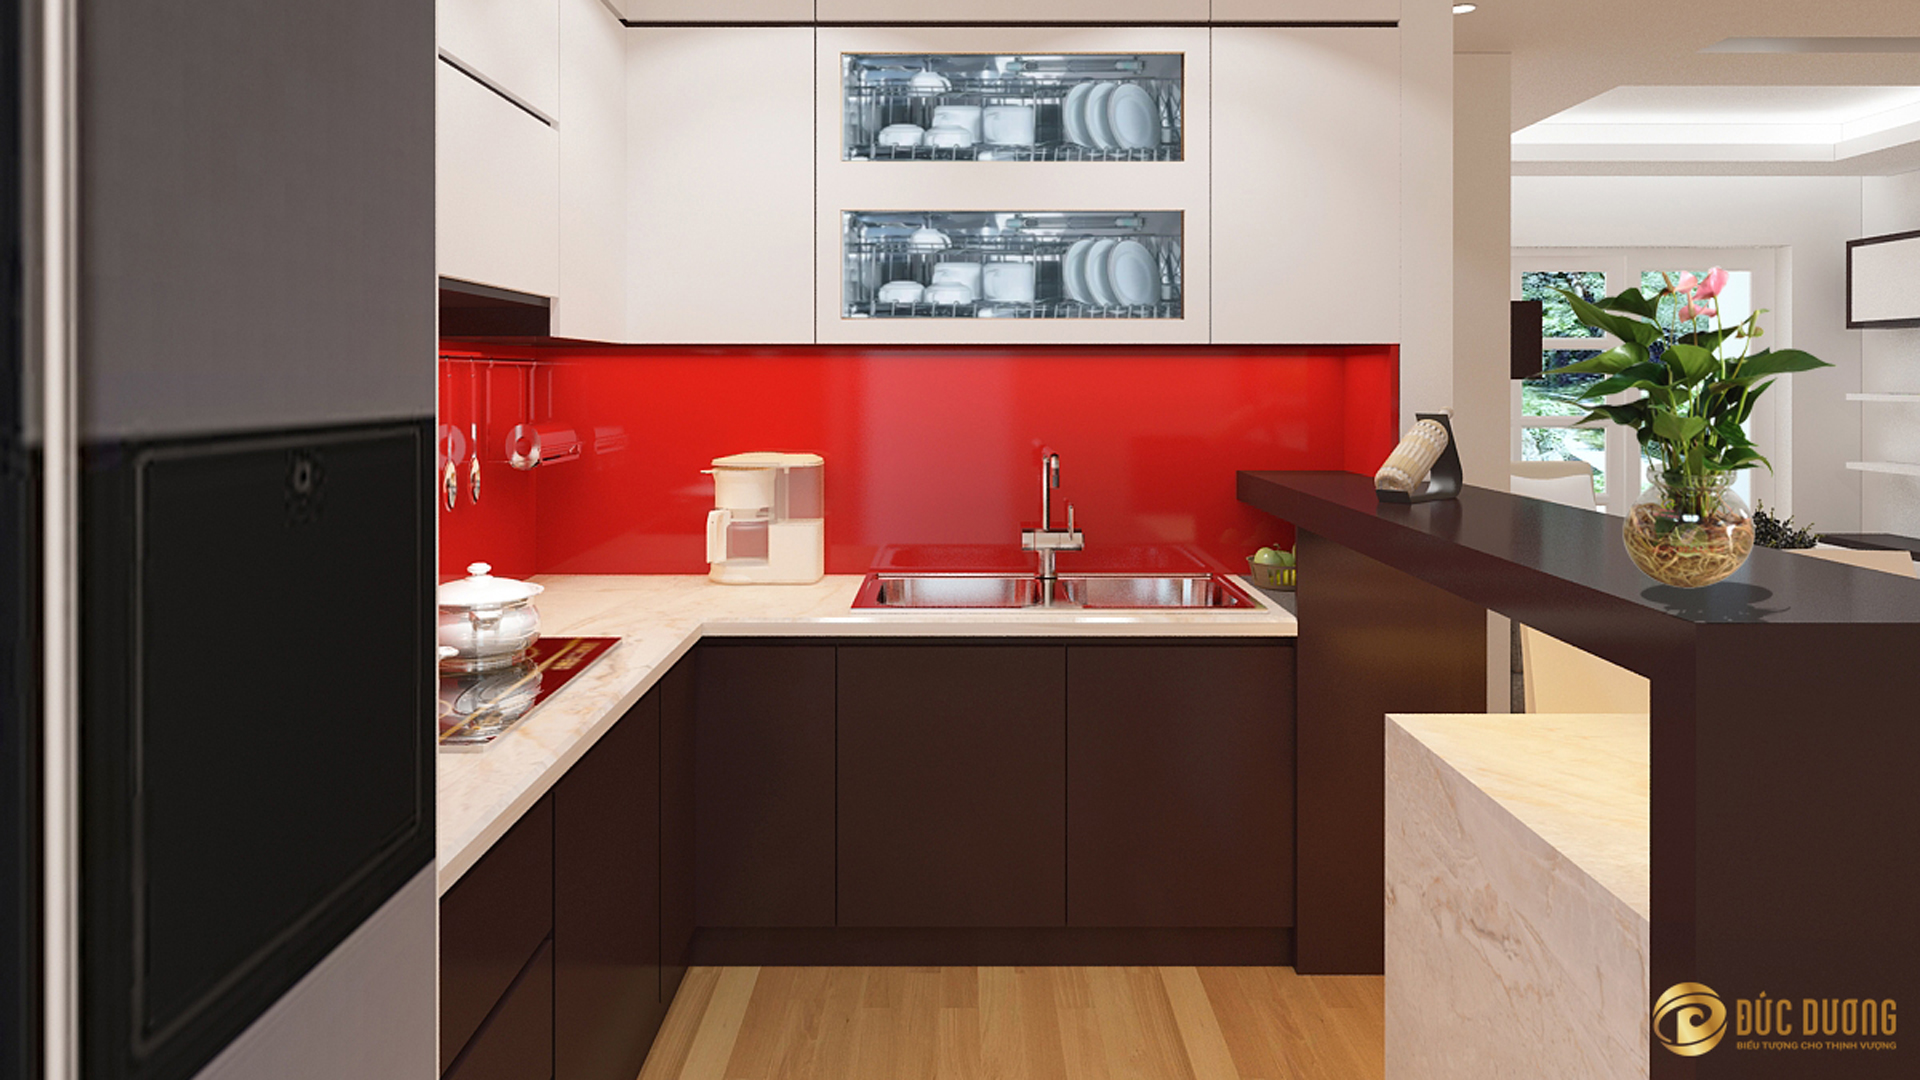 Mẫu thiết kế nội thất phòng bếp đẹp mang phong cách hiện đại